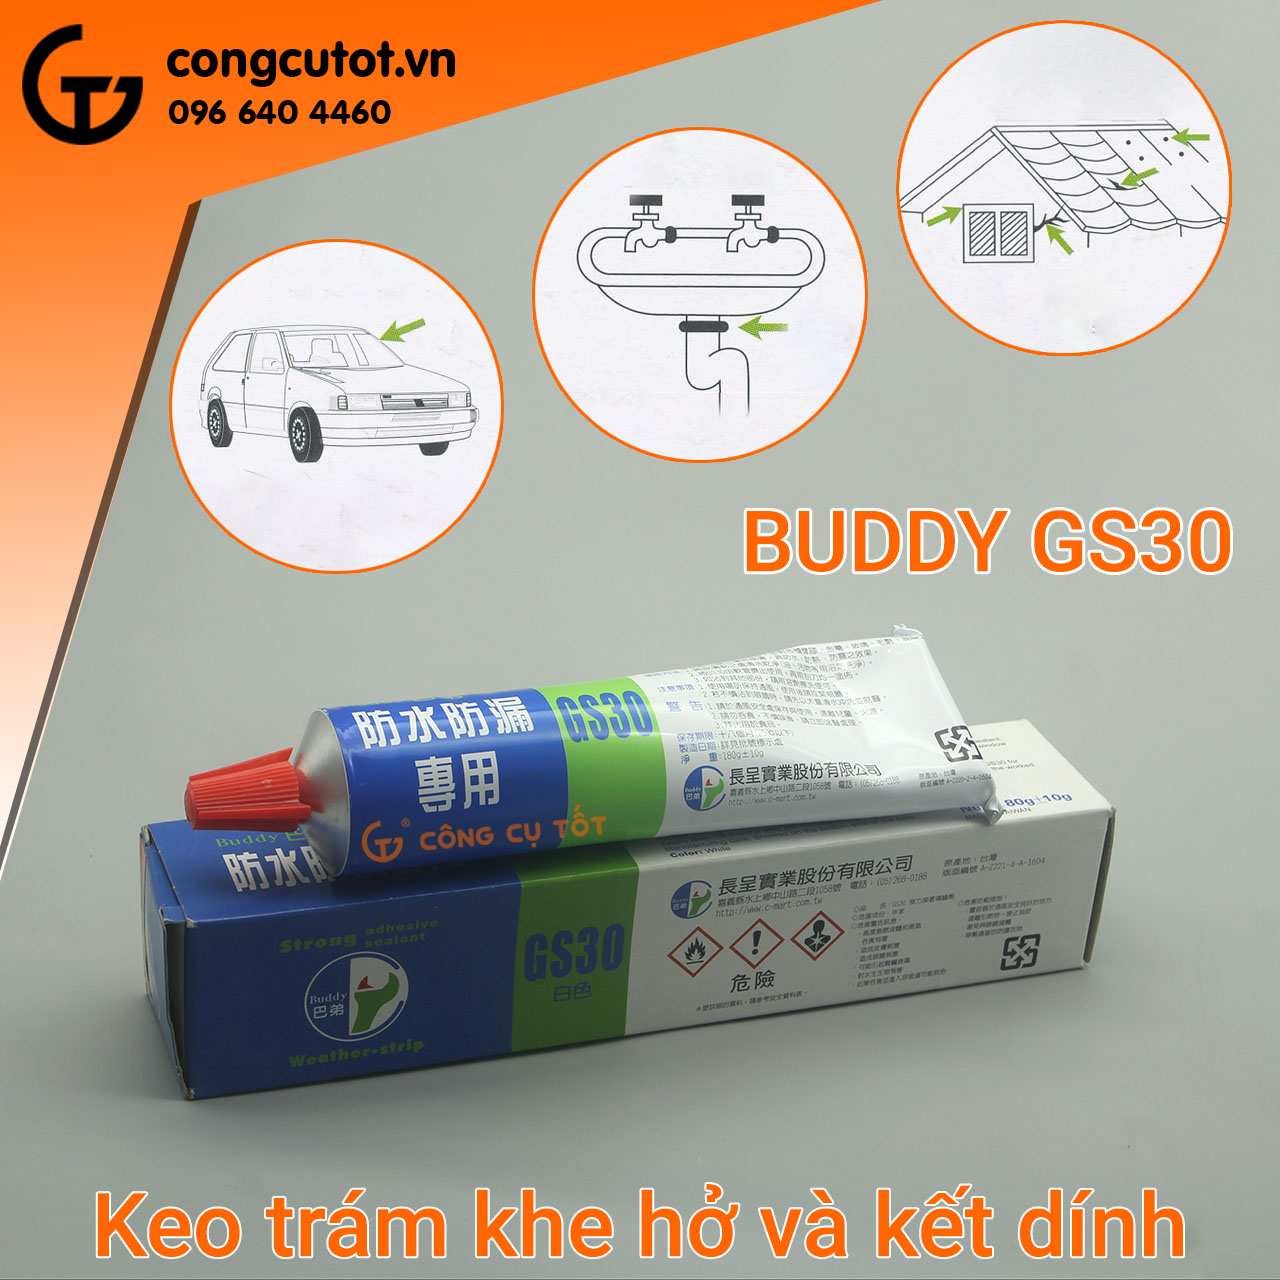 Keo trám và kết dính Buddy GS30 phù hợp với hầu hết các bề mặt vật liệu